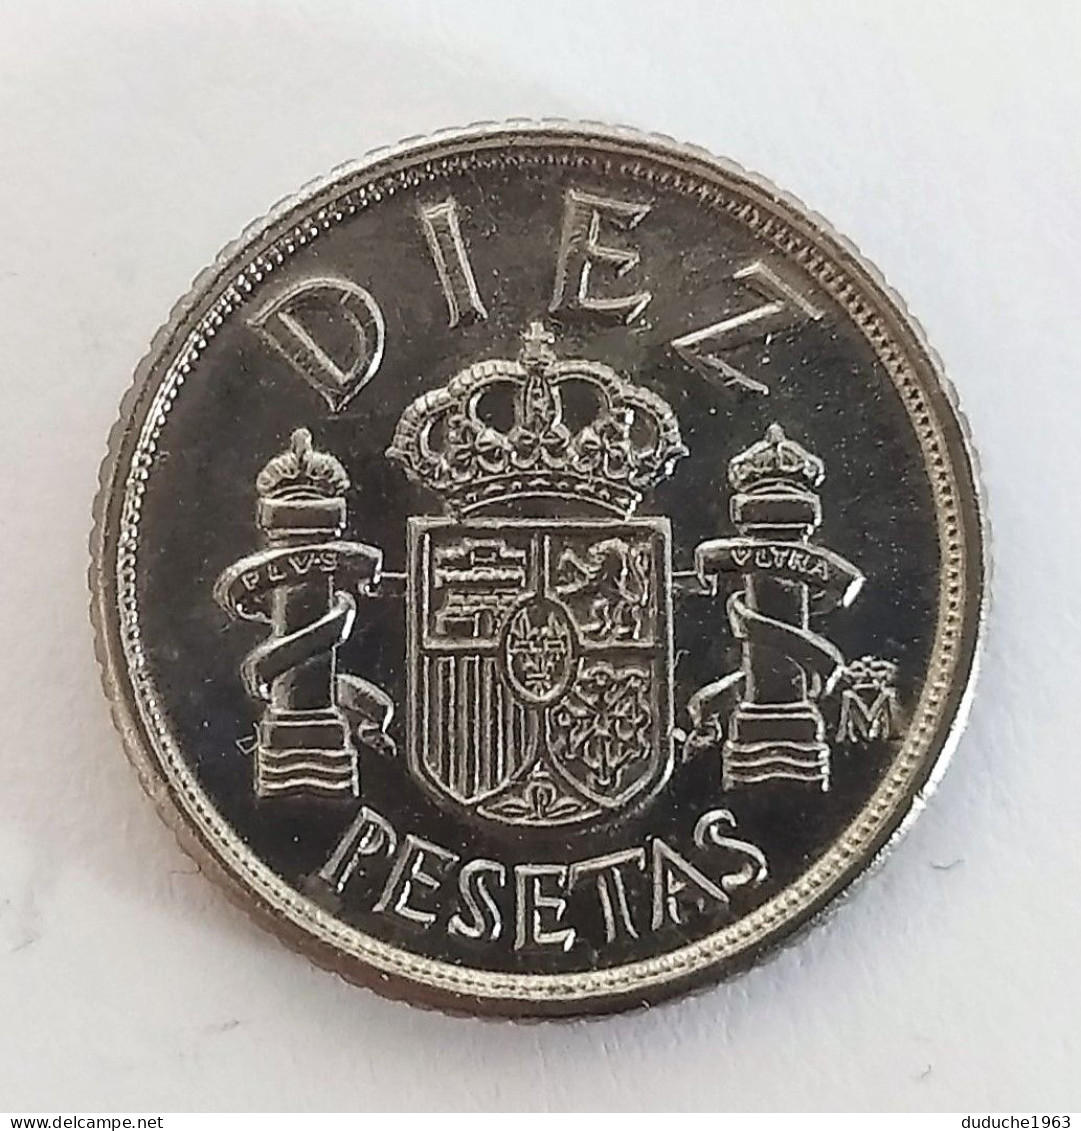 Espagne - 10 Pesetas 1983 - 10 Centimos